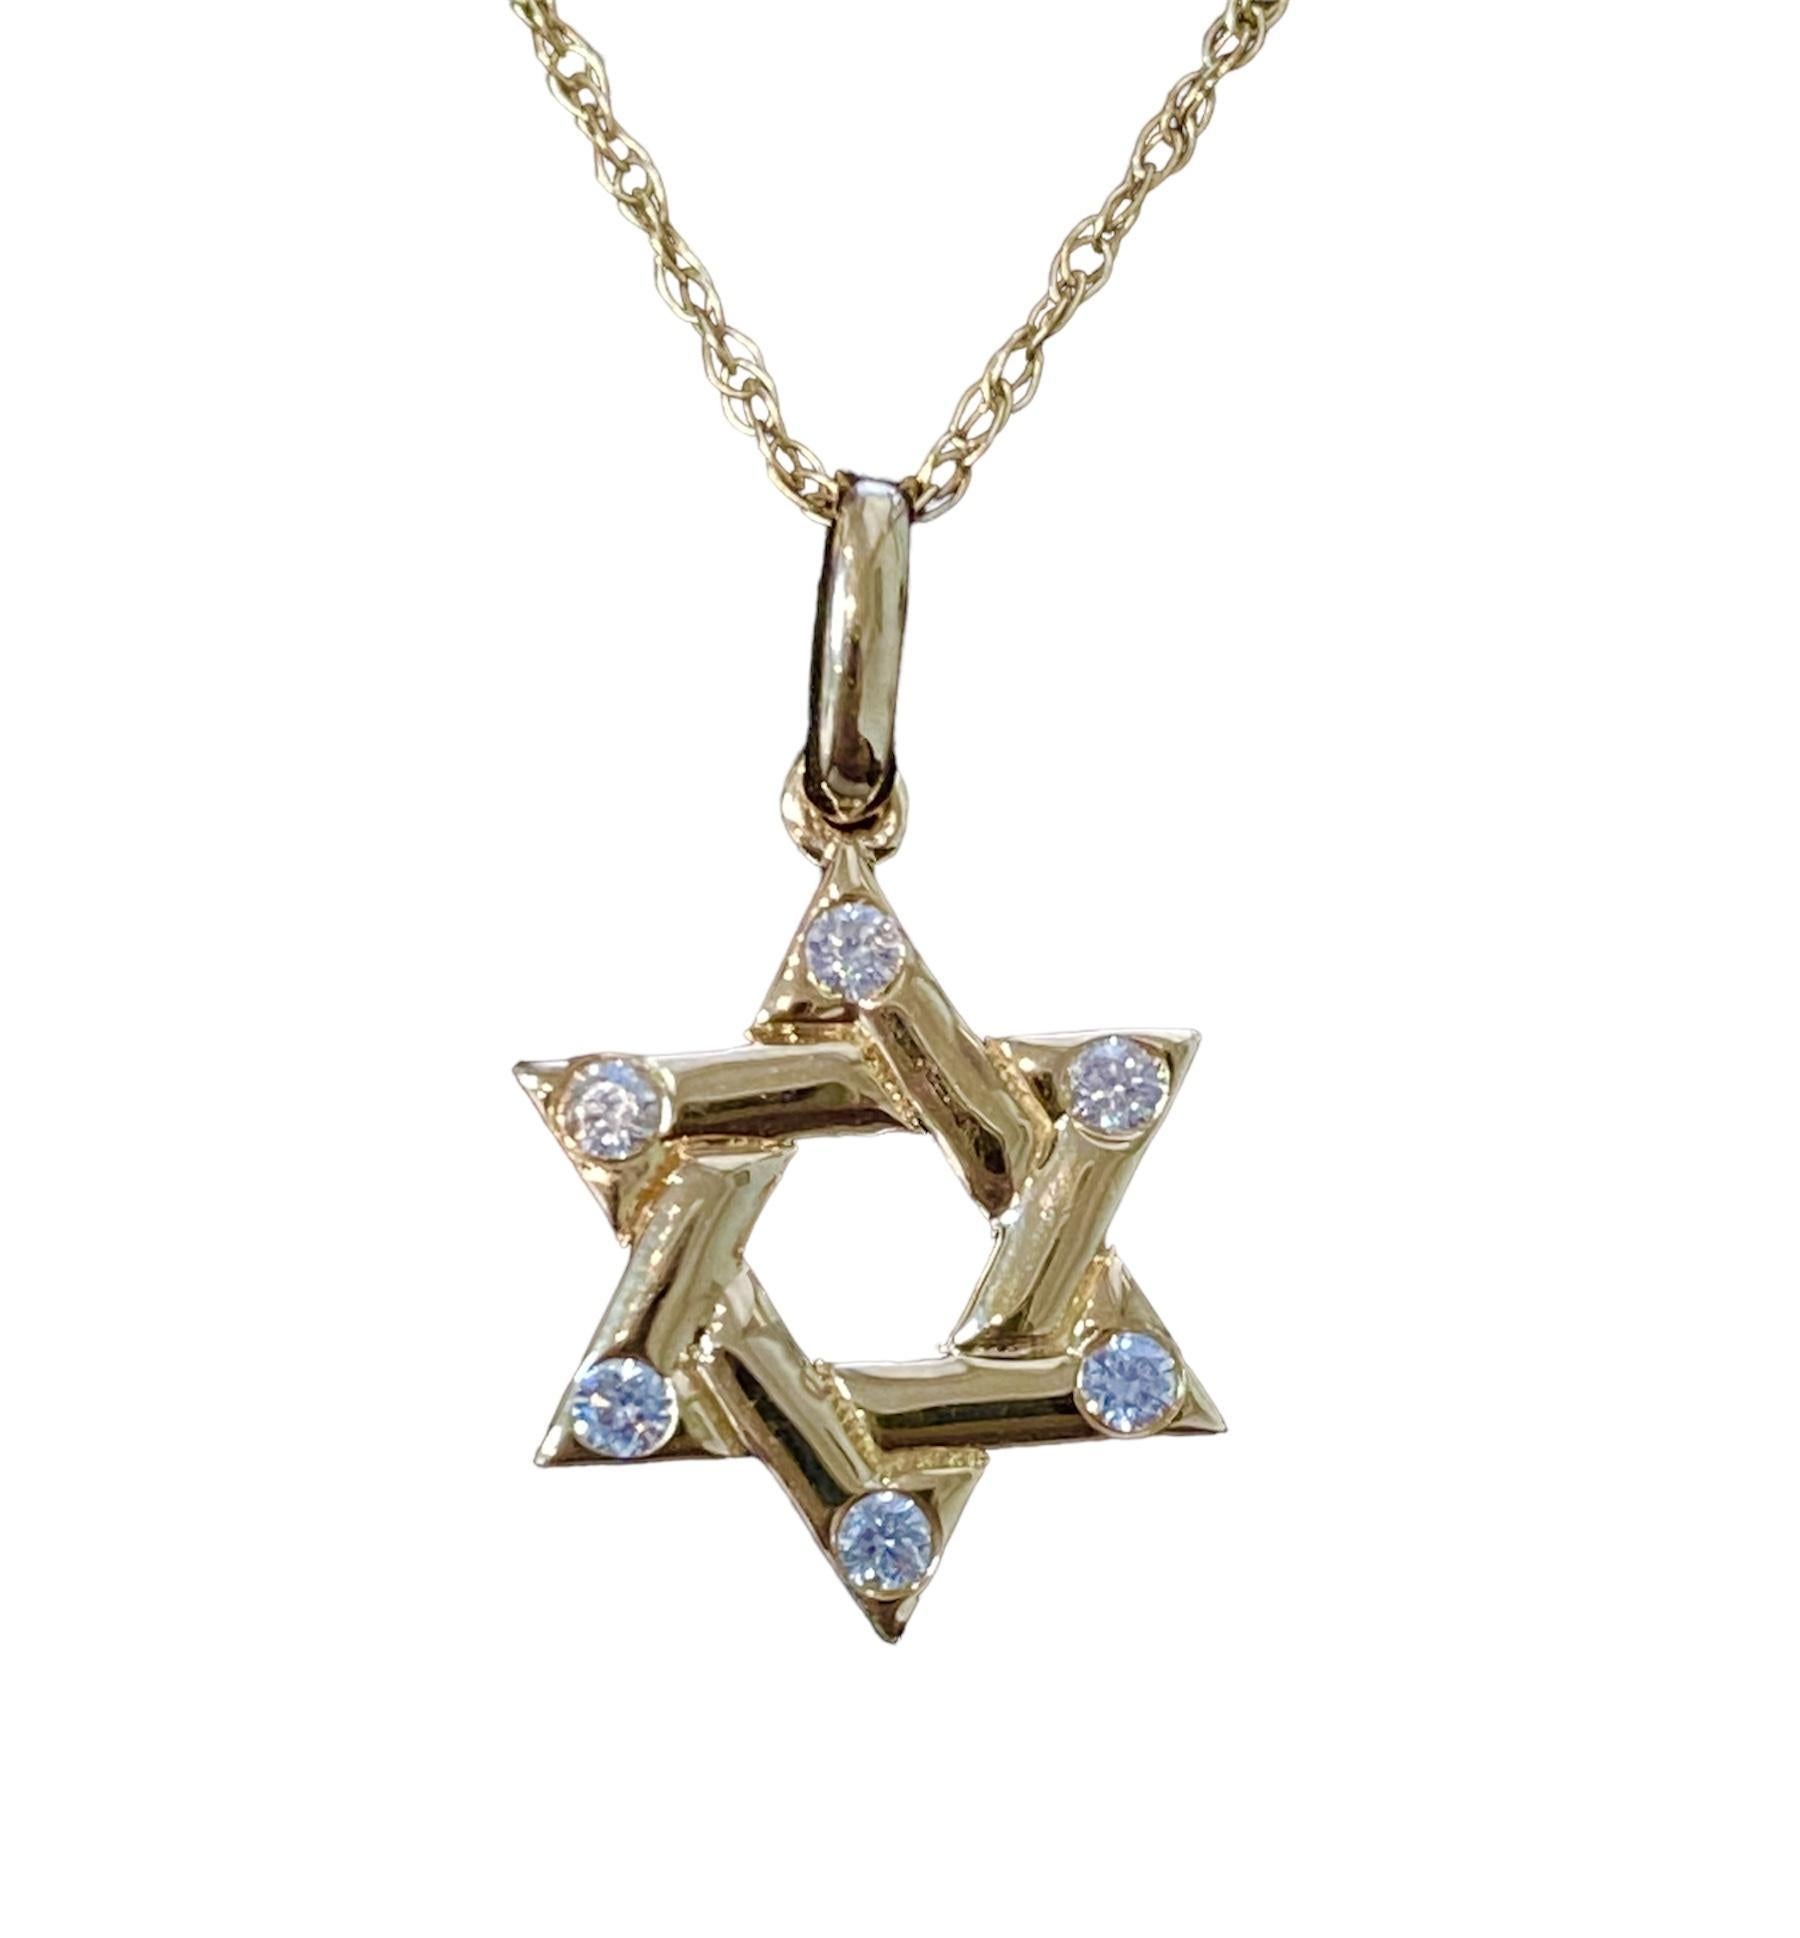 Le collier étoile de David en or 14 carats et diamants naturels est un bijou symbolique qui allie magnifiquement signification religieuse et élégance intemporelle.
Fabriqué en or 14 carats de haute qualité
Le pendentif prend la forme de l'étoile de